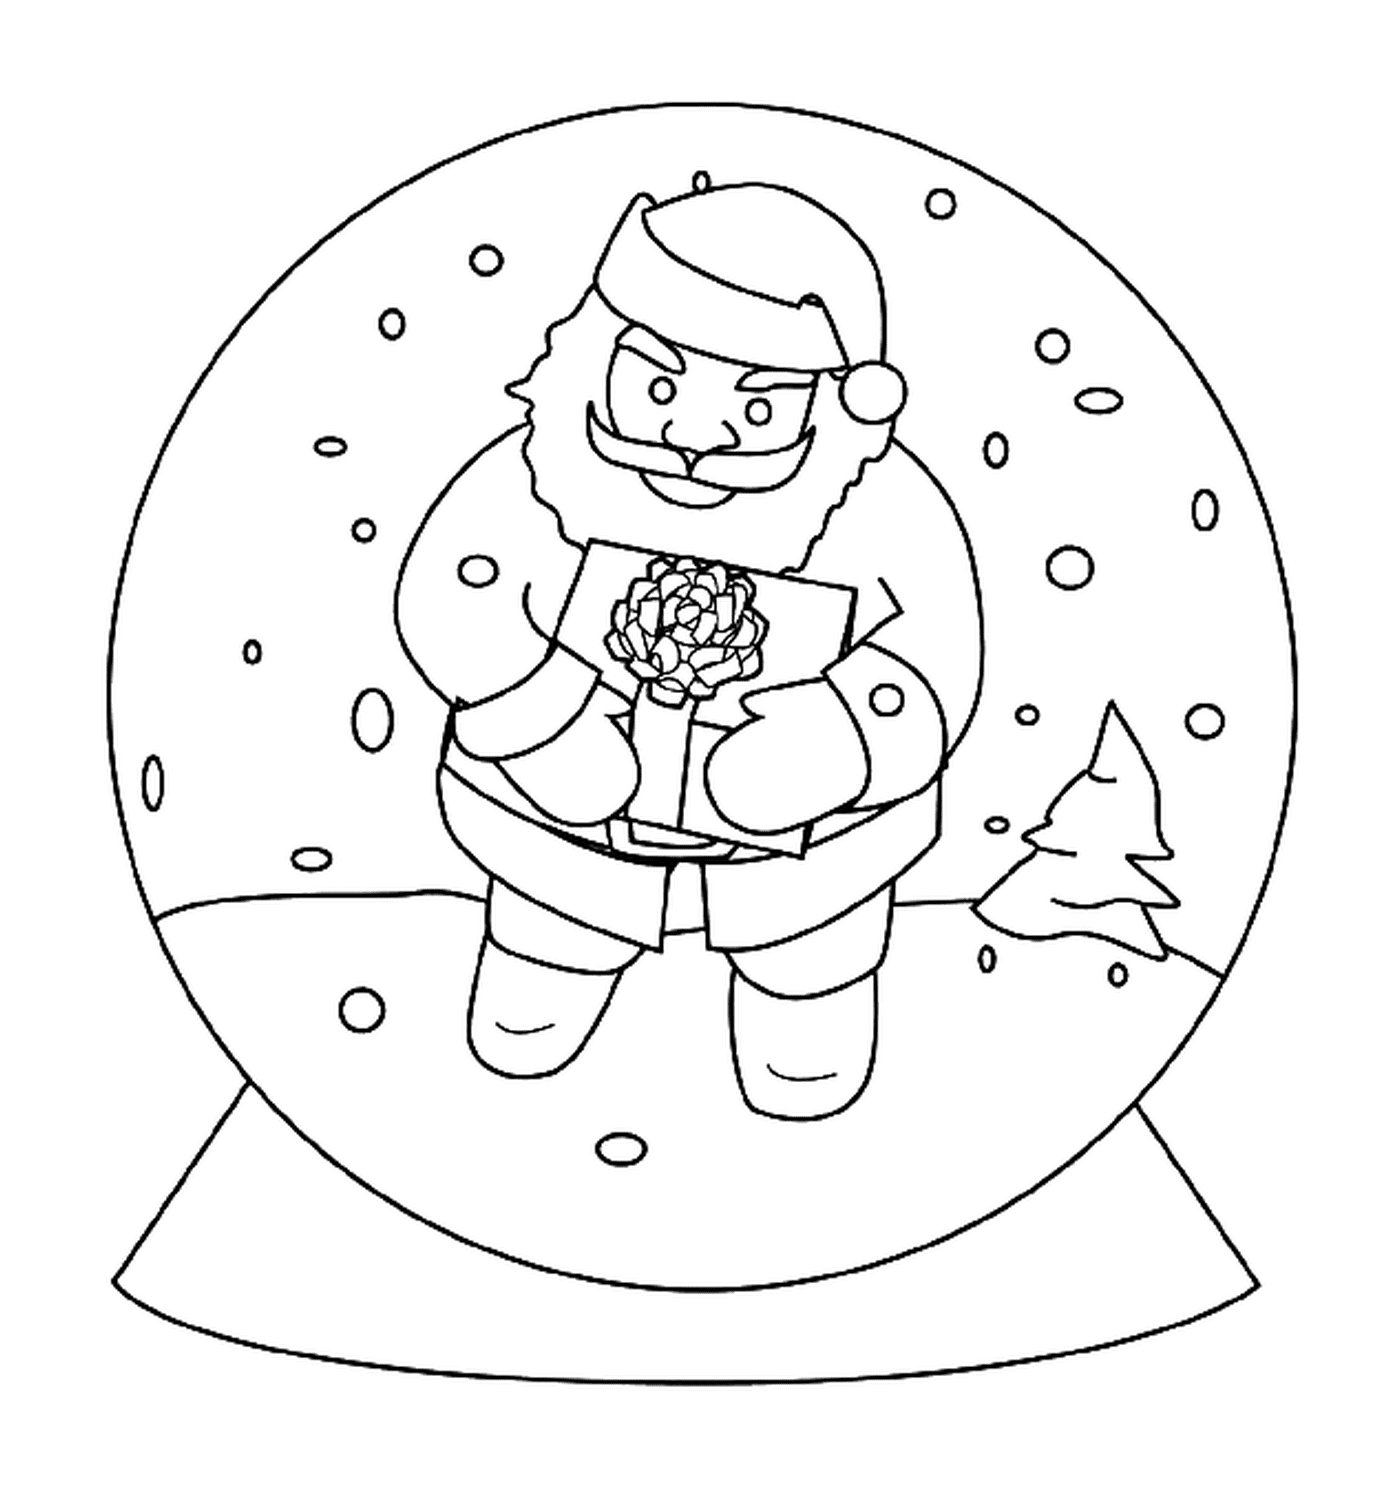  Papai Noel em uma bola de neve 